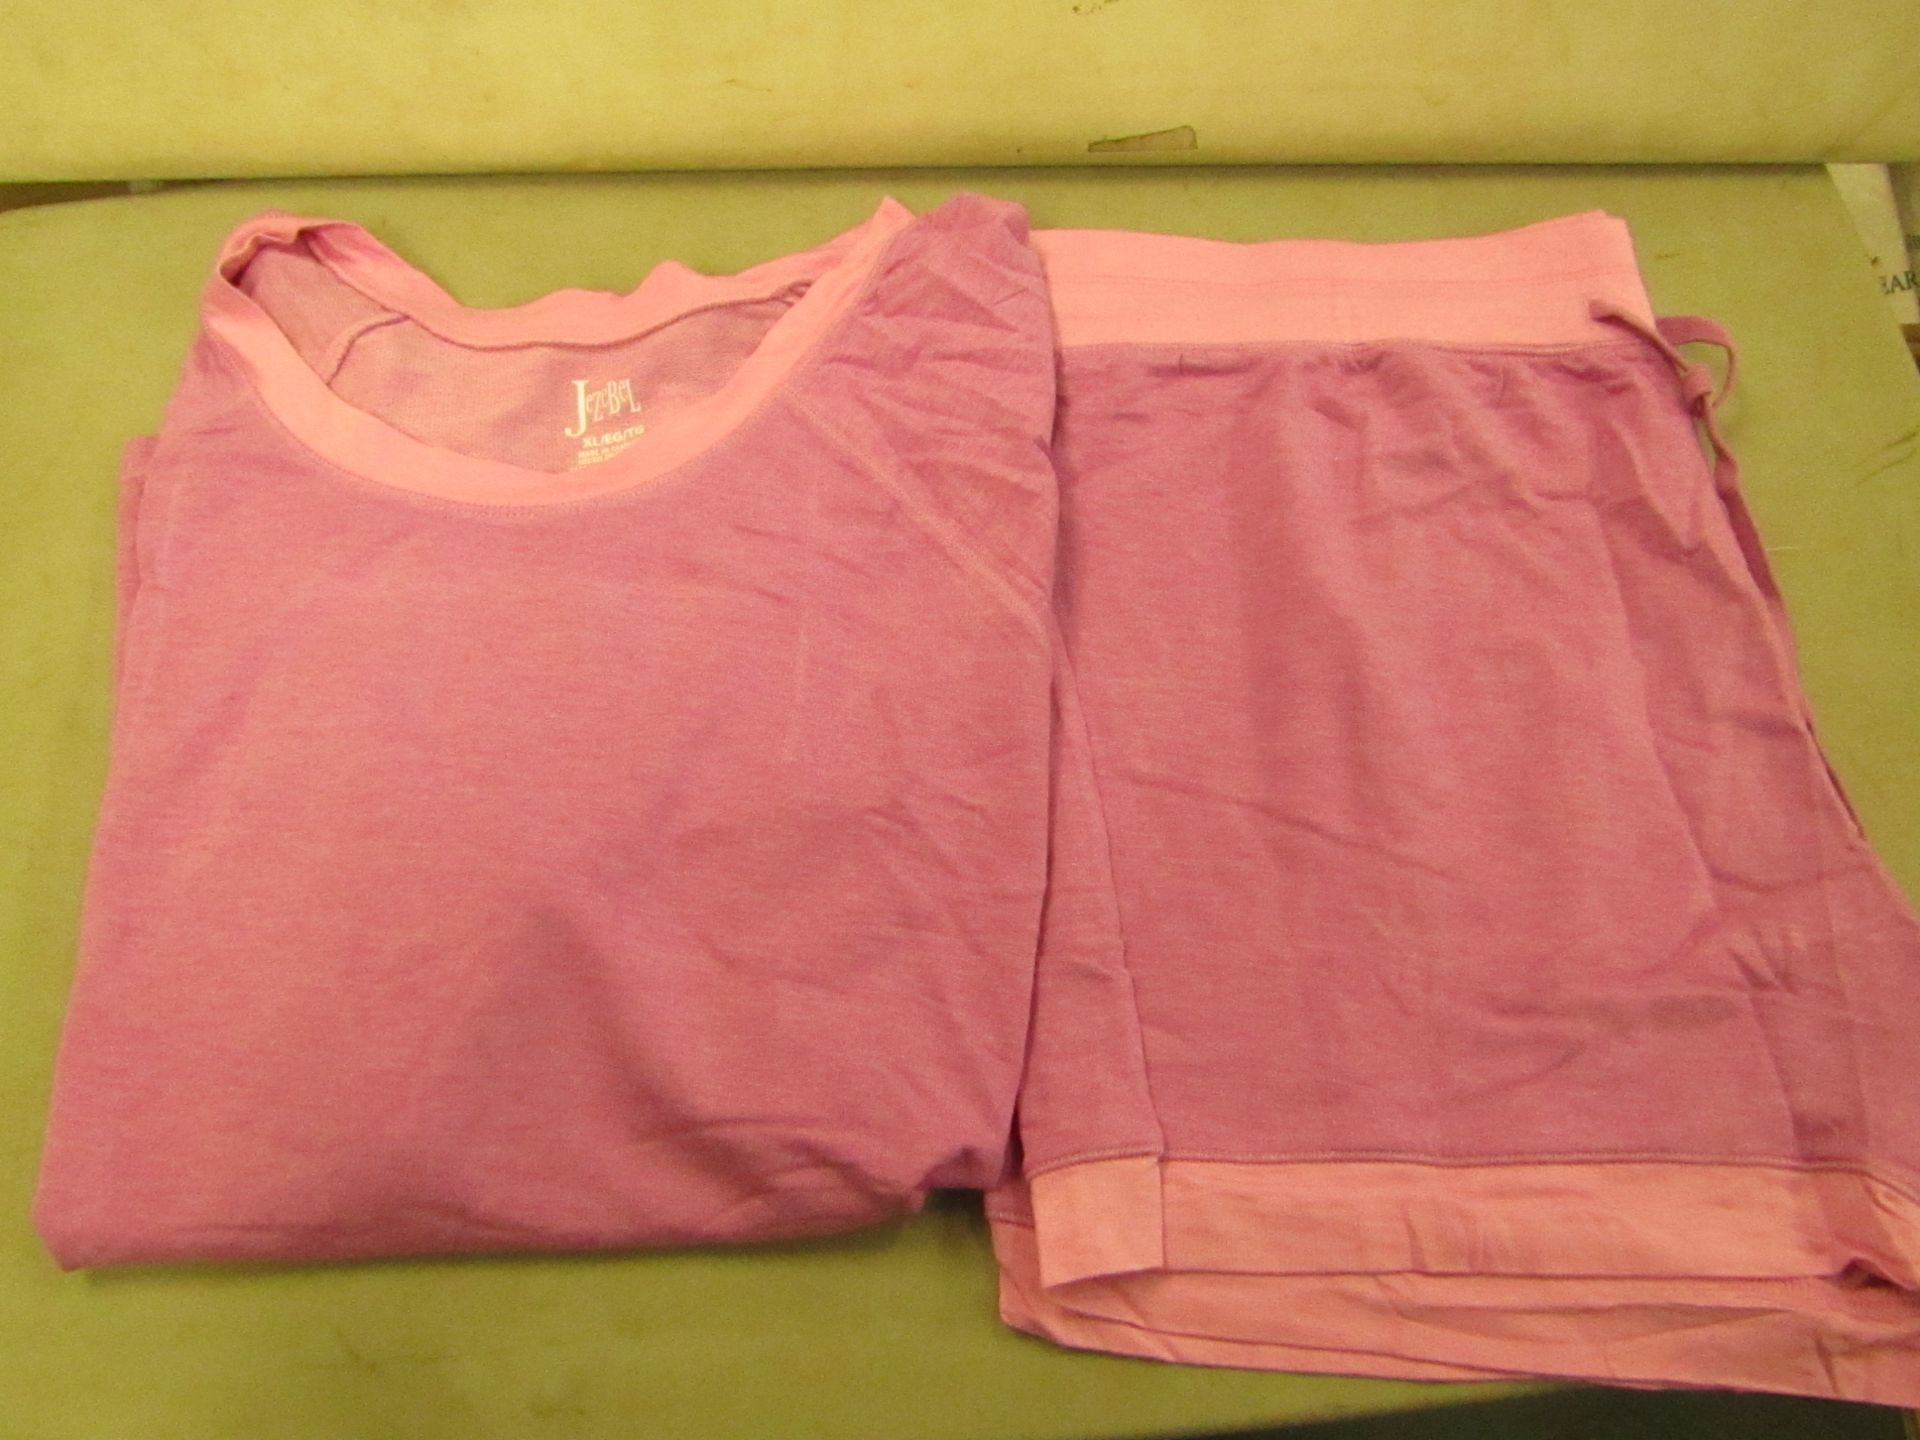 Jezebel 2PC Lounge /Pyjama Set Pink Size X/L Look Unworn ( Not in Original Packaging )